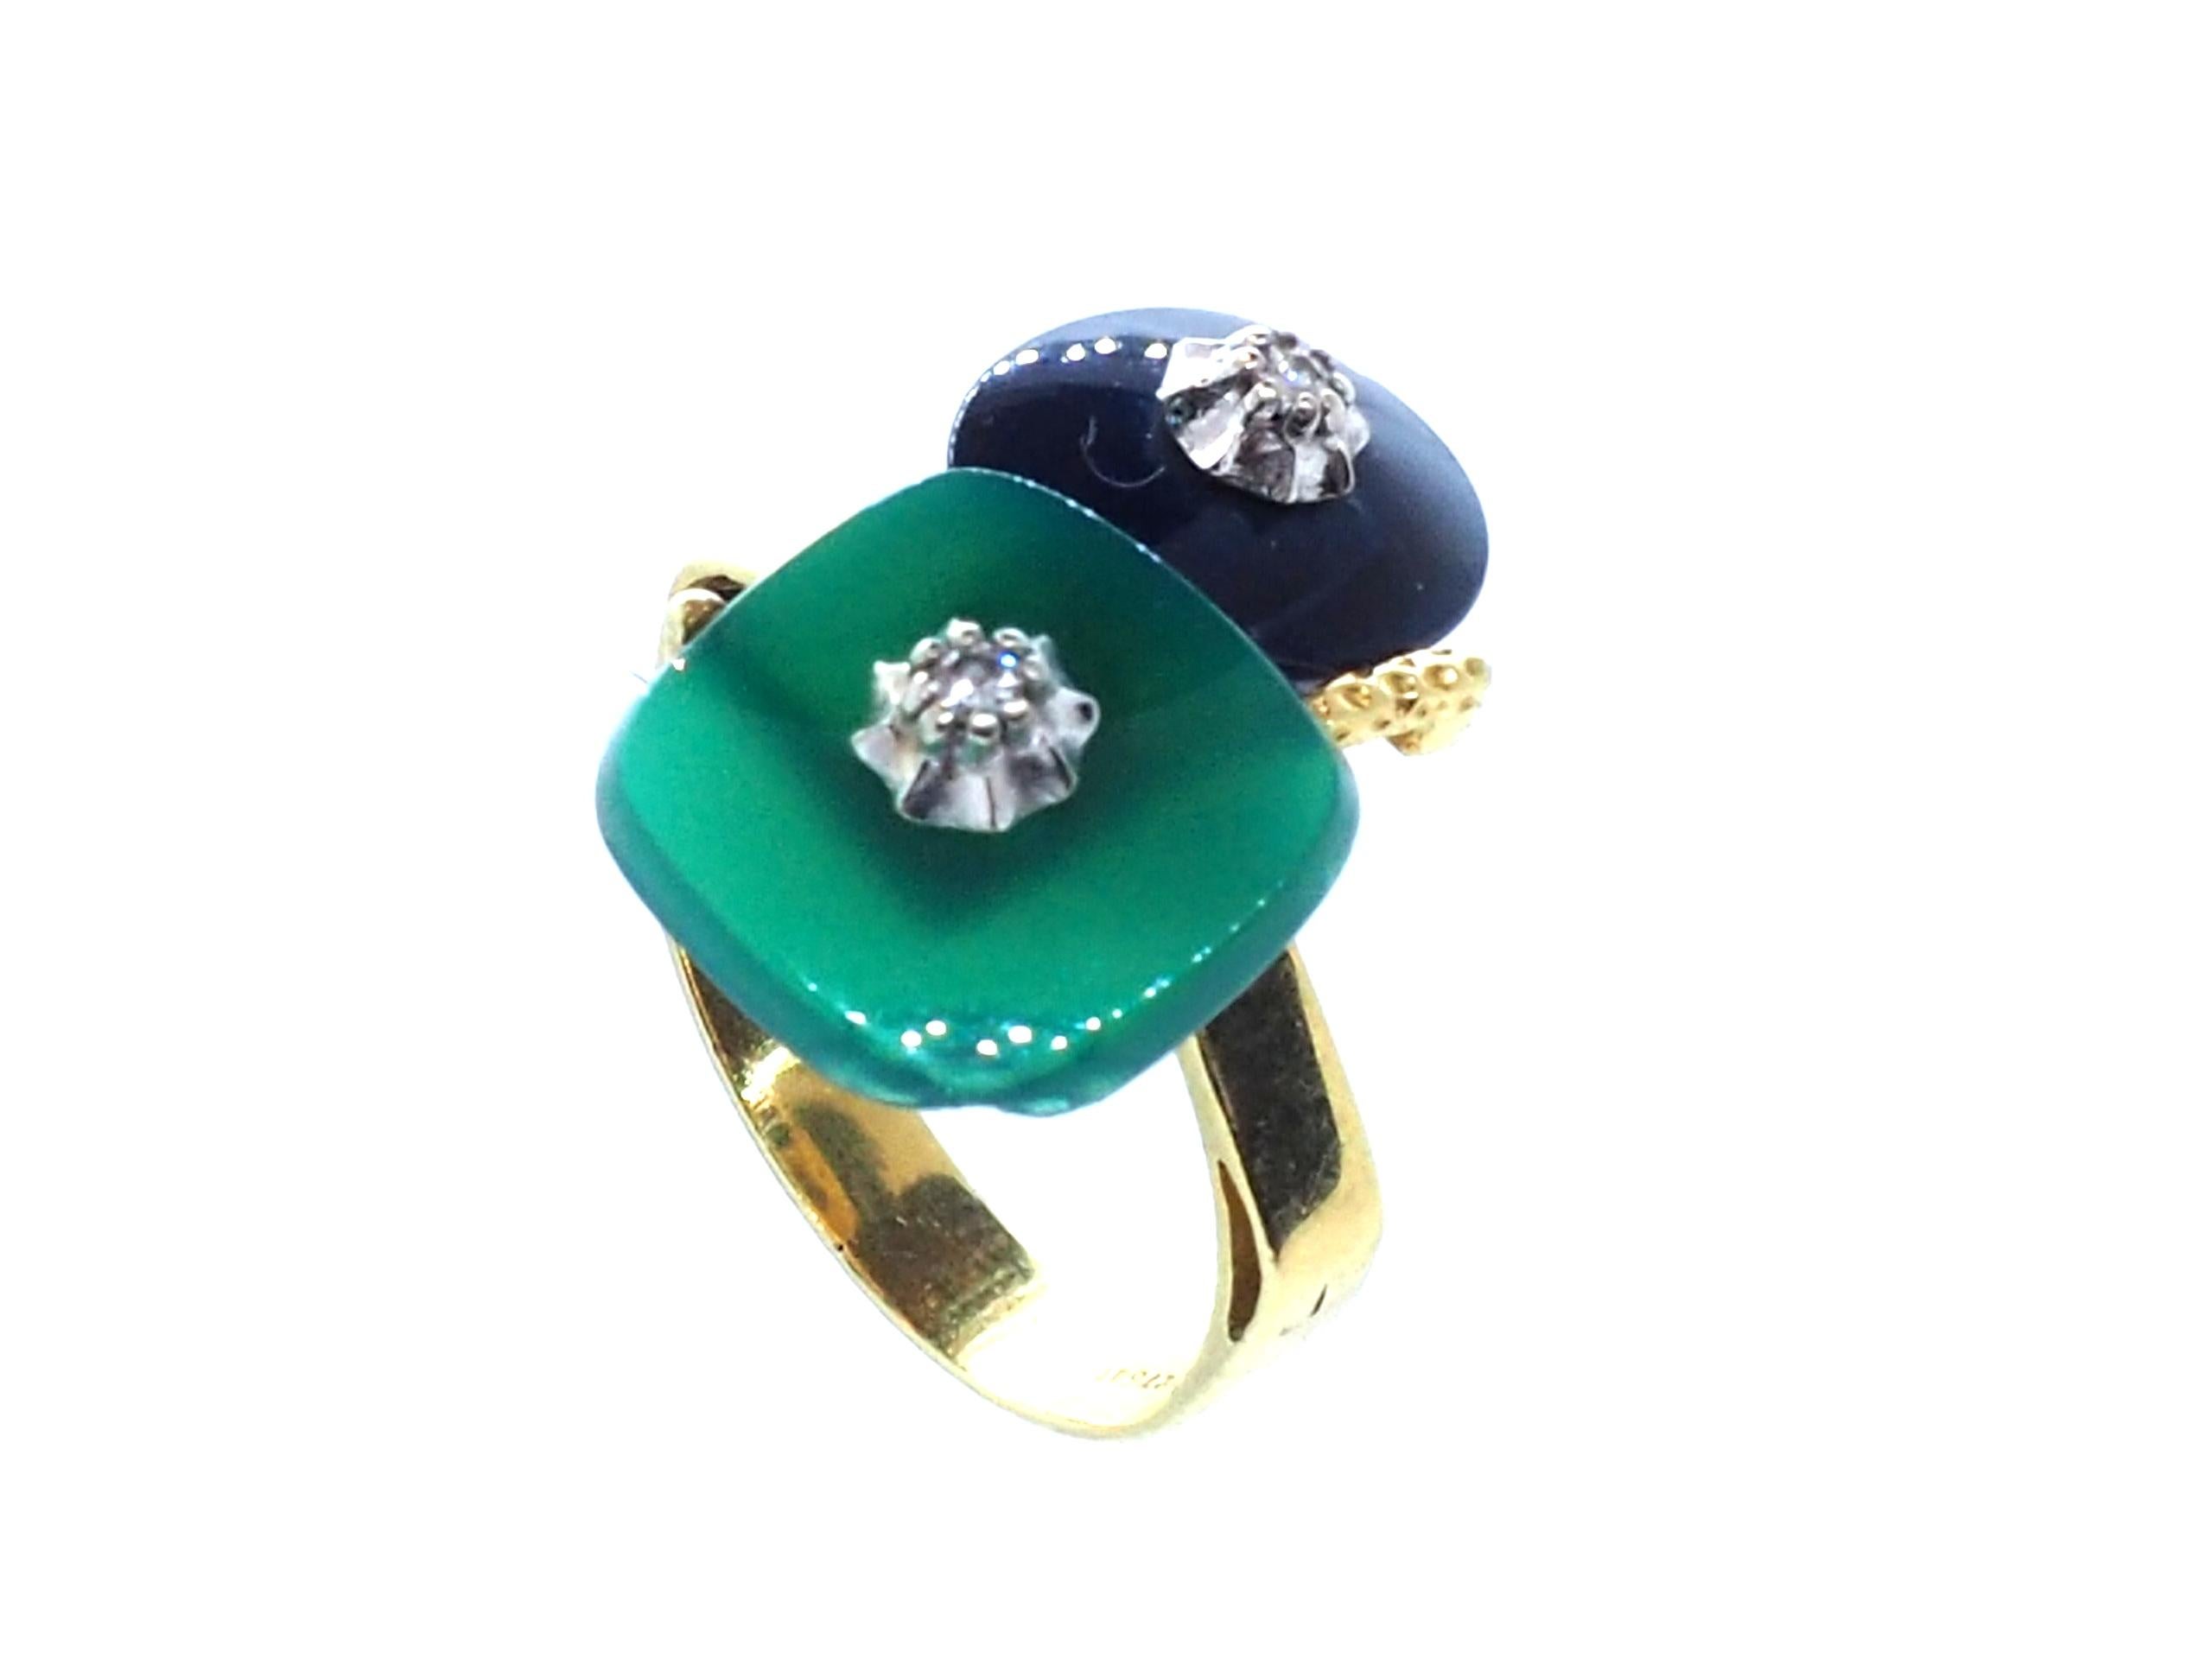 Entdecken Sie zeitlose Eleganz mit diesem exquisiten geometrischen Ring aus 18 Karat Gelbgold, der mit leuchtenden Jade- und Lapislazuli-Edelsteinen besetzt ist, die von zwei kleinen Diamanten akzentuiert werden. 

Das einzigartige Design kombiniert